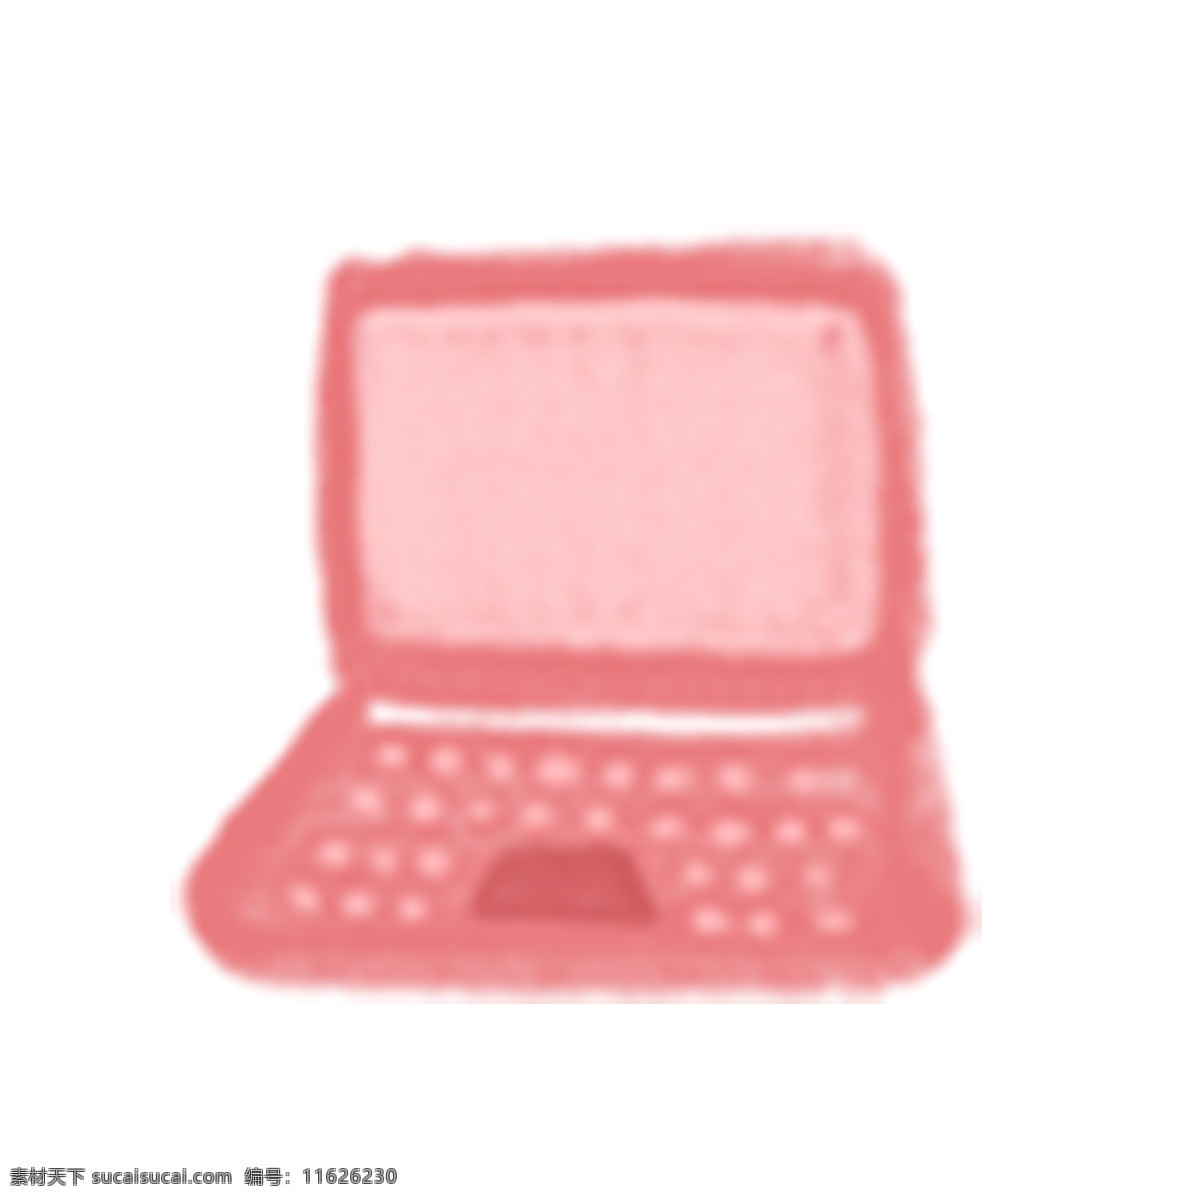 粉色 笔记本 电脑 ui 图标 笔记本电脑 粉色电脑 插画 ui图标 电脑图标